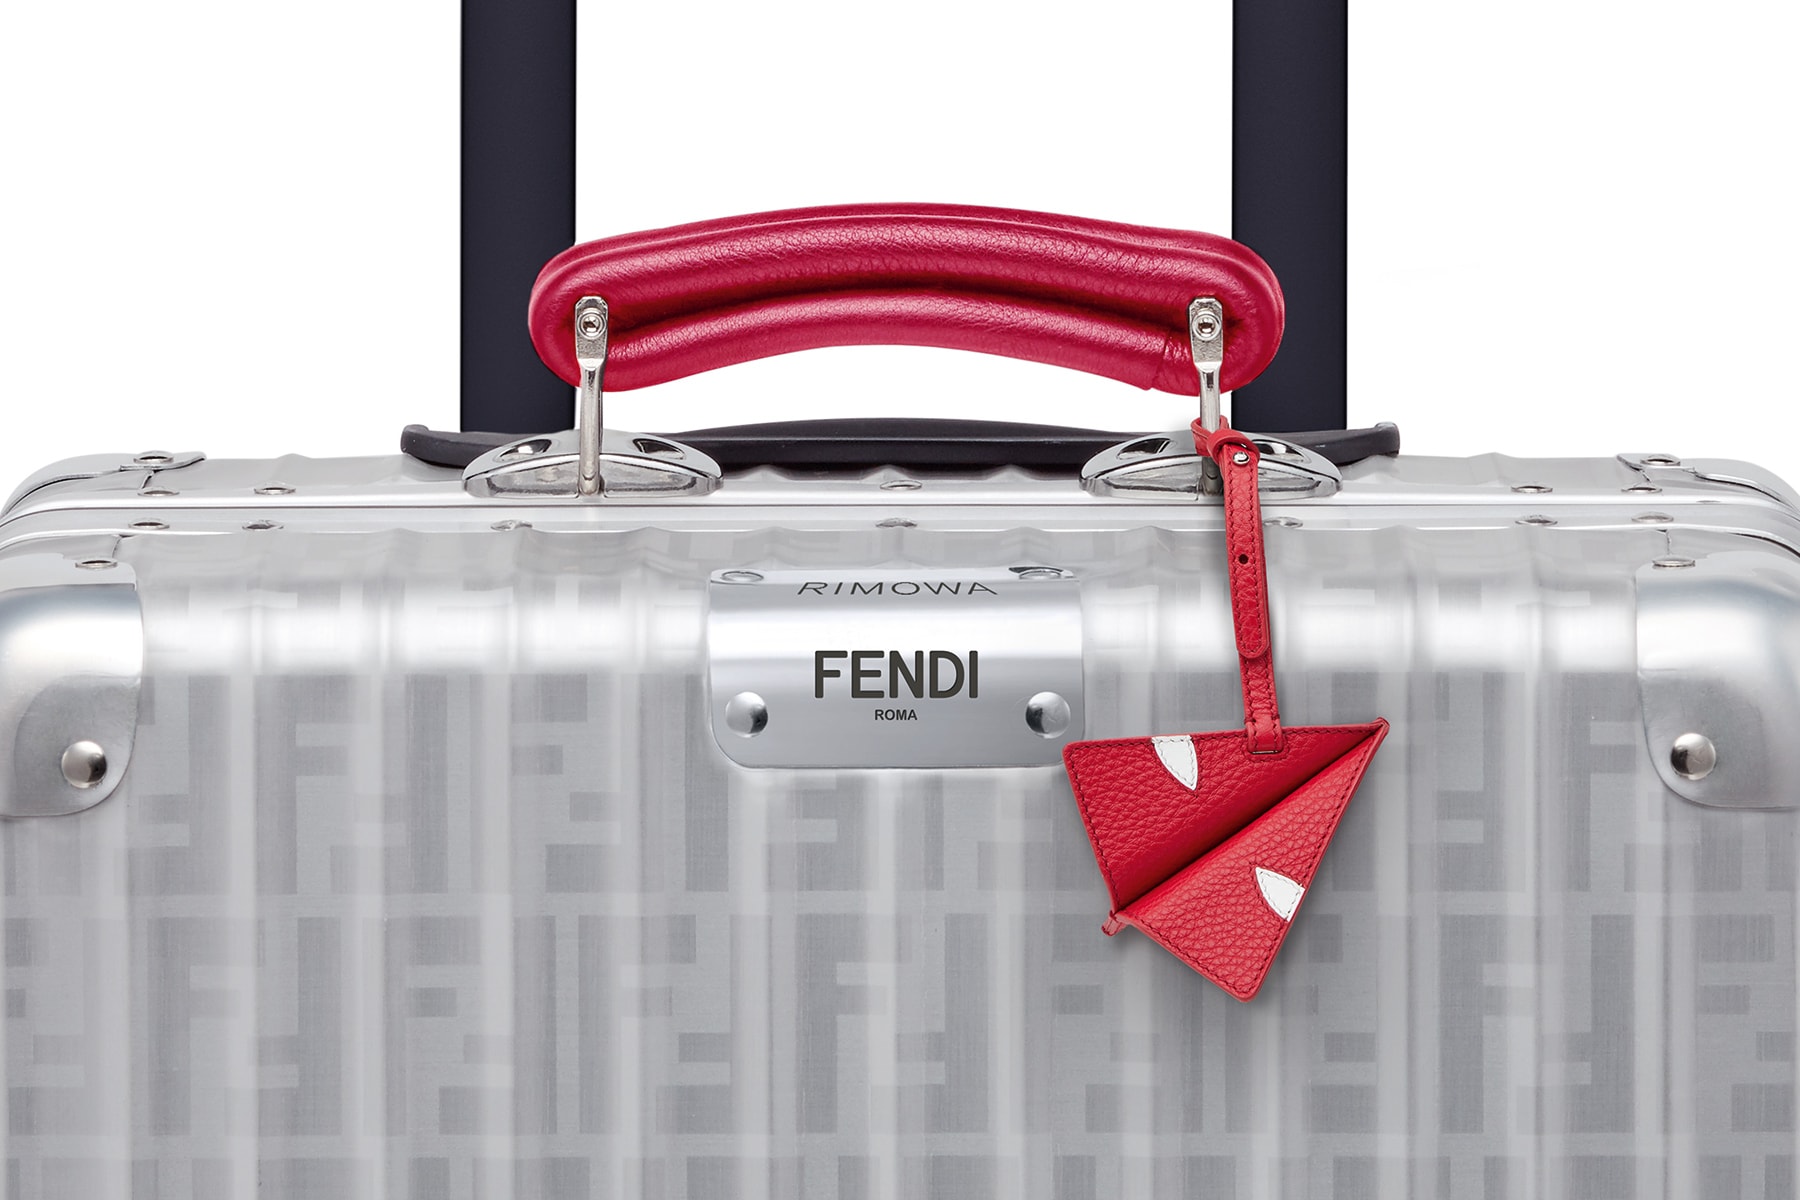 RIMOWA x Fendi 全新聯乘行李箱系列發售詳情公布